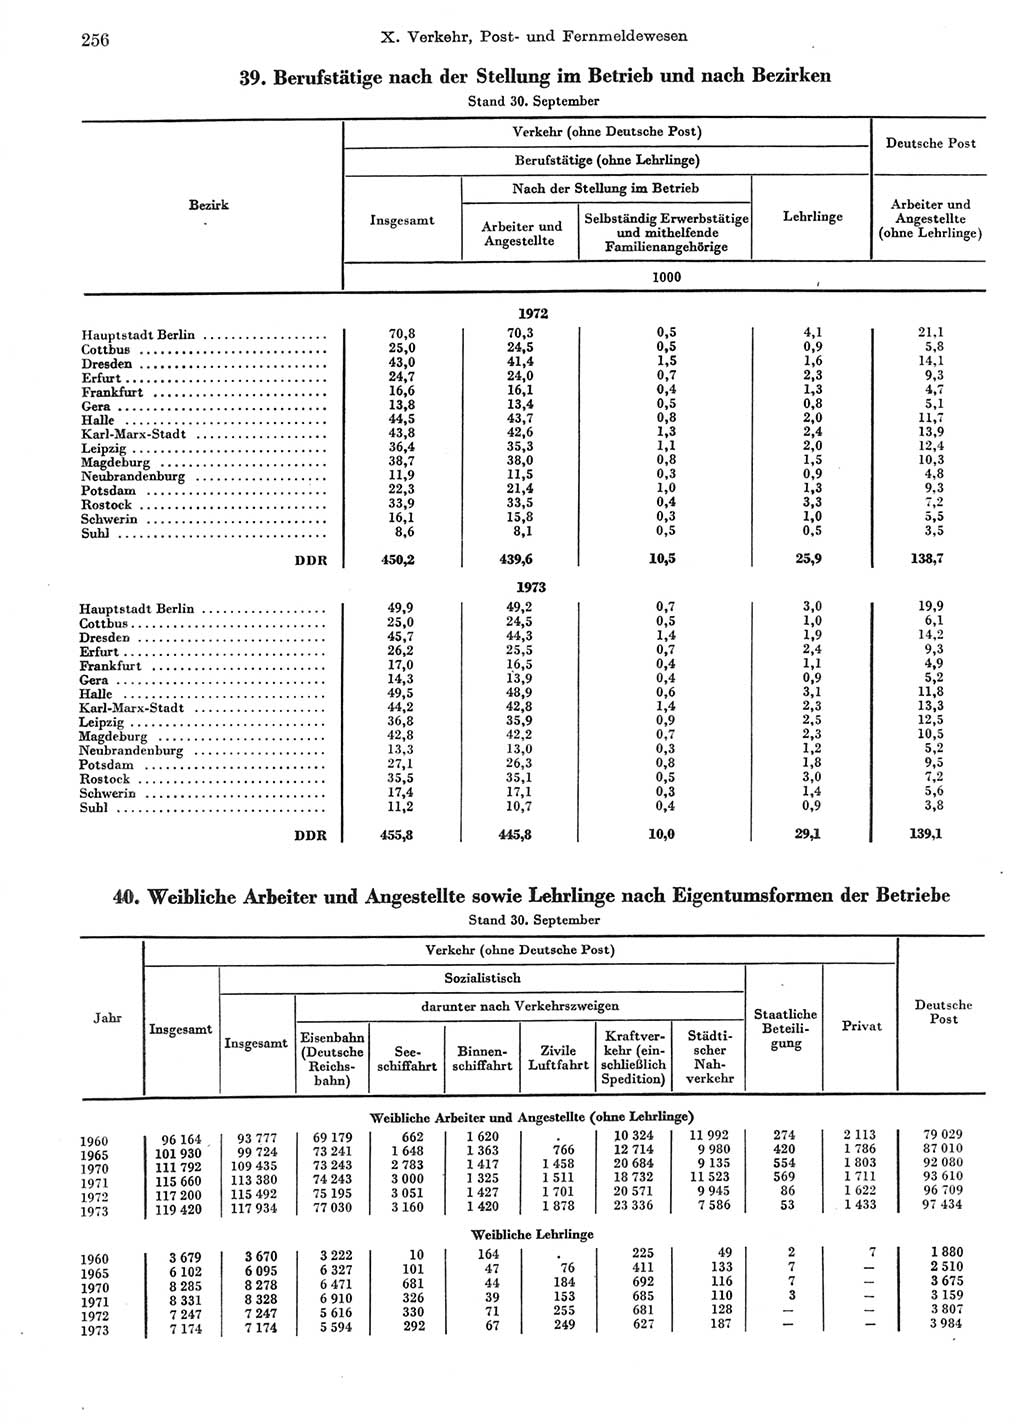 Statistisches Jahrbuch der Deutschen Demokratischen Republik (DDR) 1974, Seite 256 (Stat. Jb. DDR 1974, S. 256)